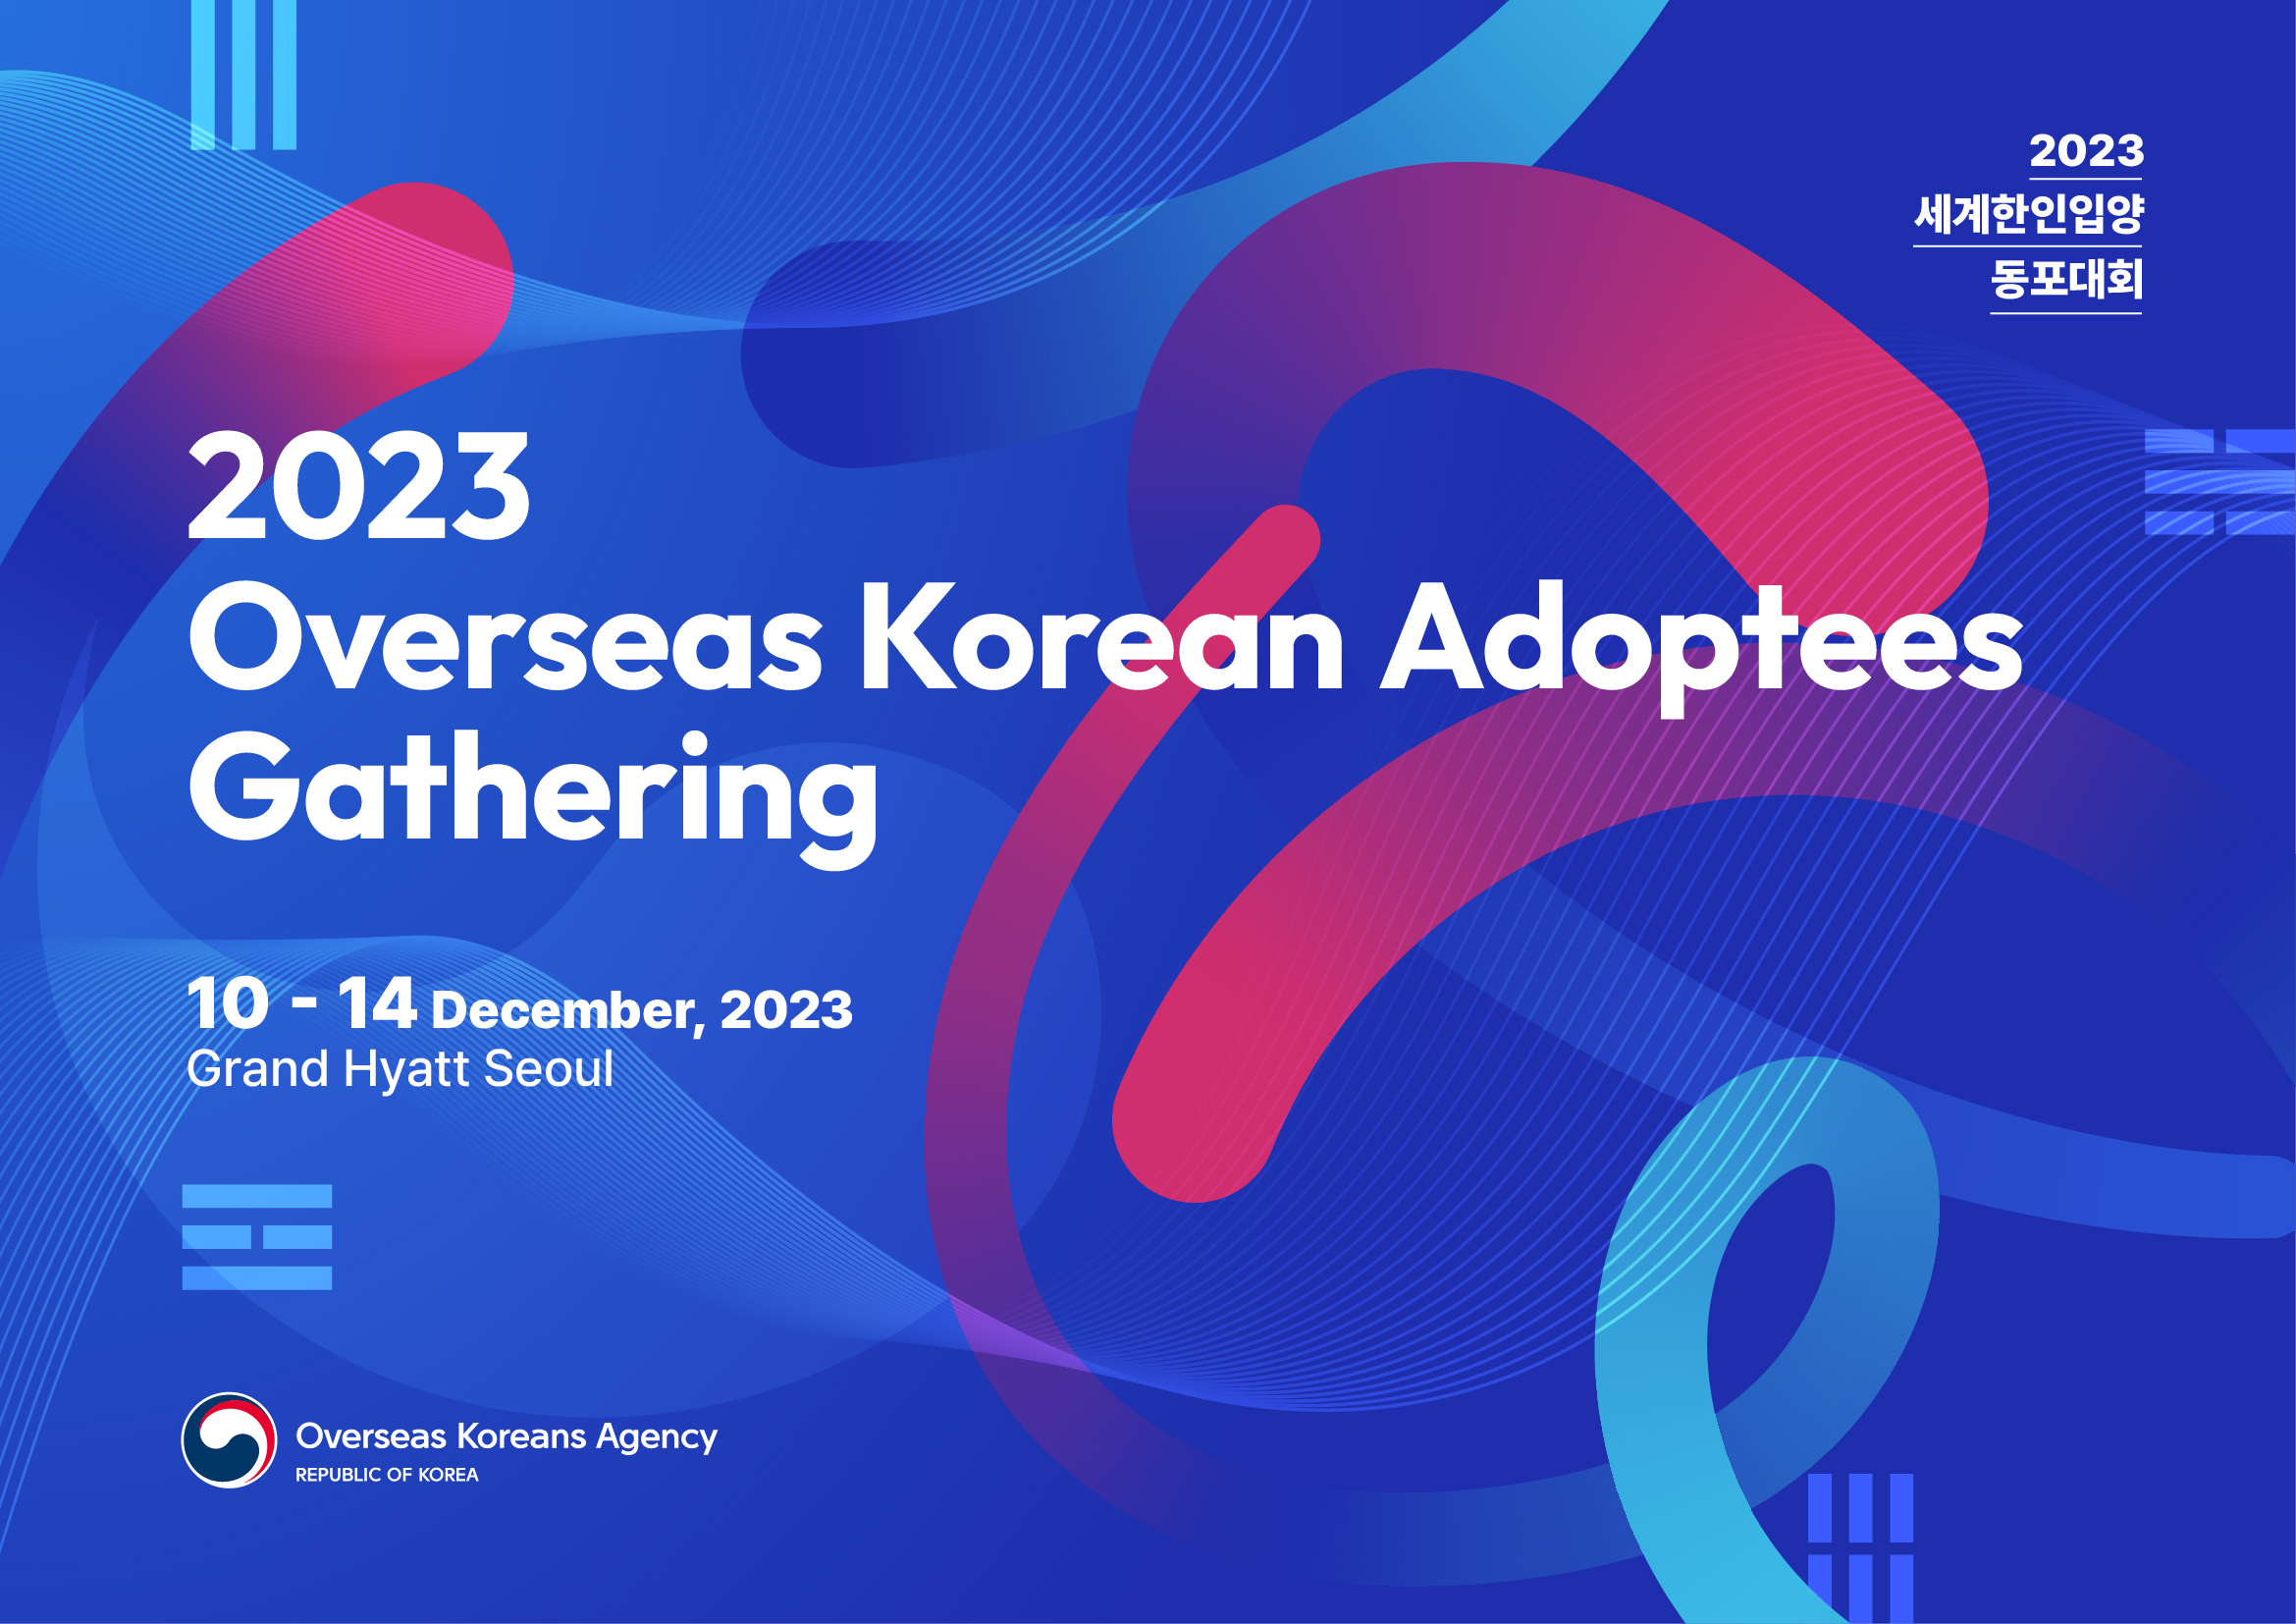 Les adoptés d'origine coréenne se réuniront à Séoul du 11 au 14 décembre